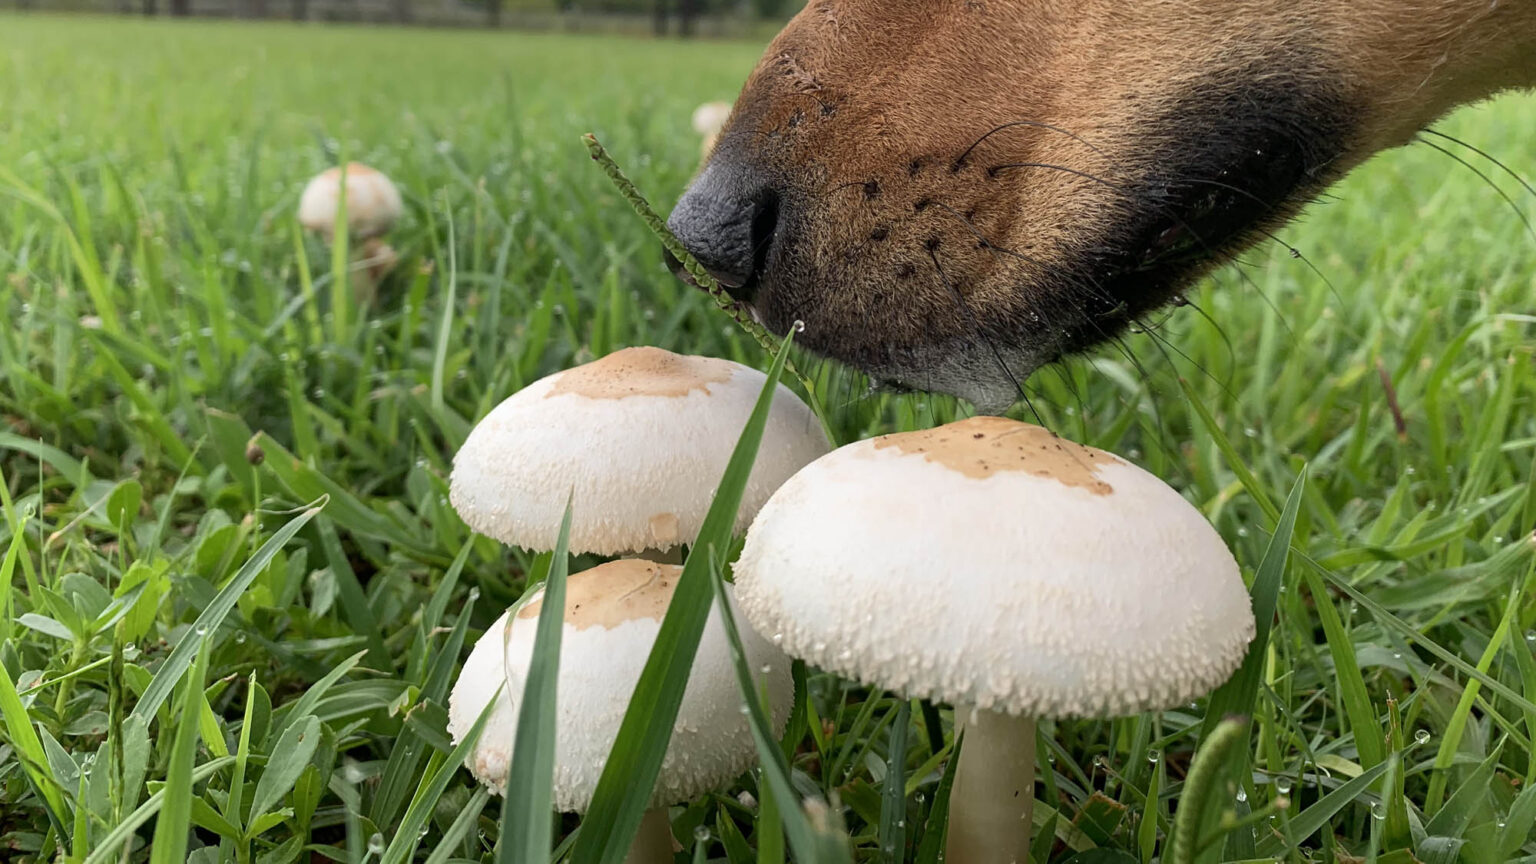 Dog smelling a mushroom